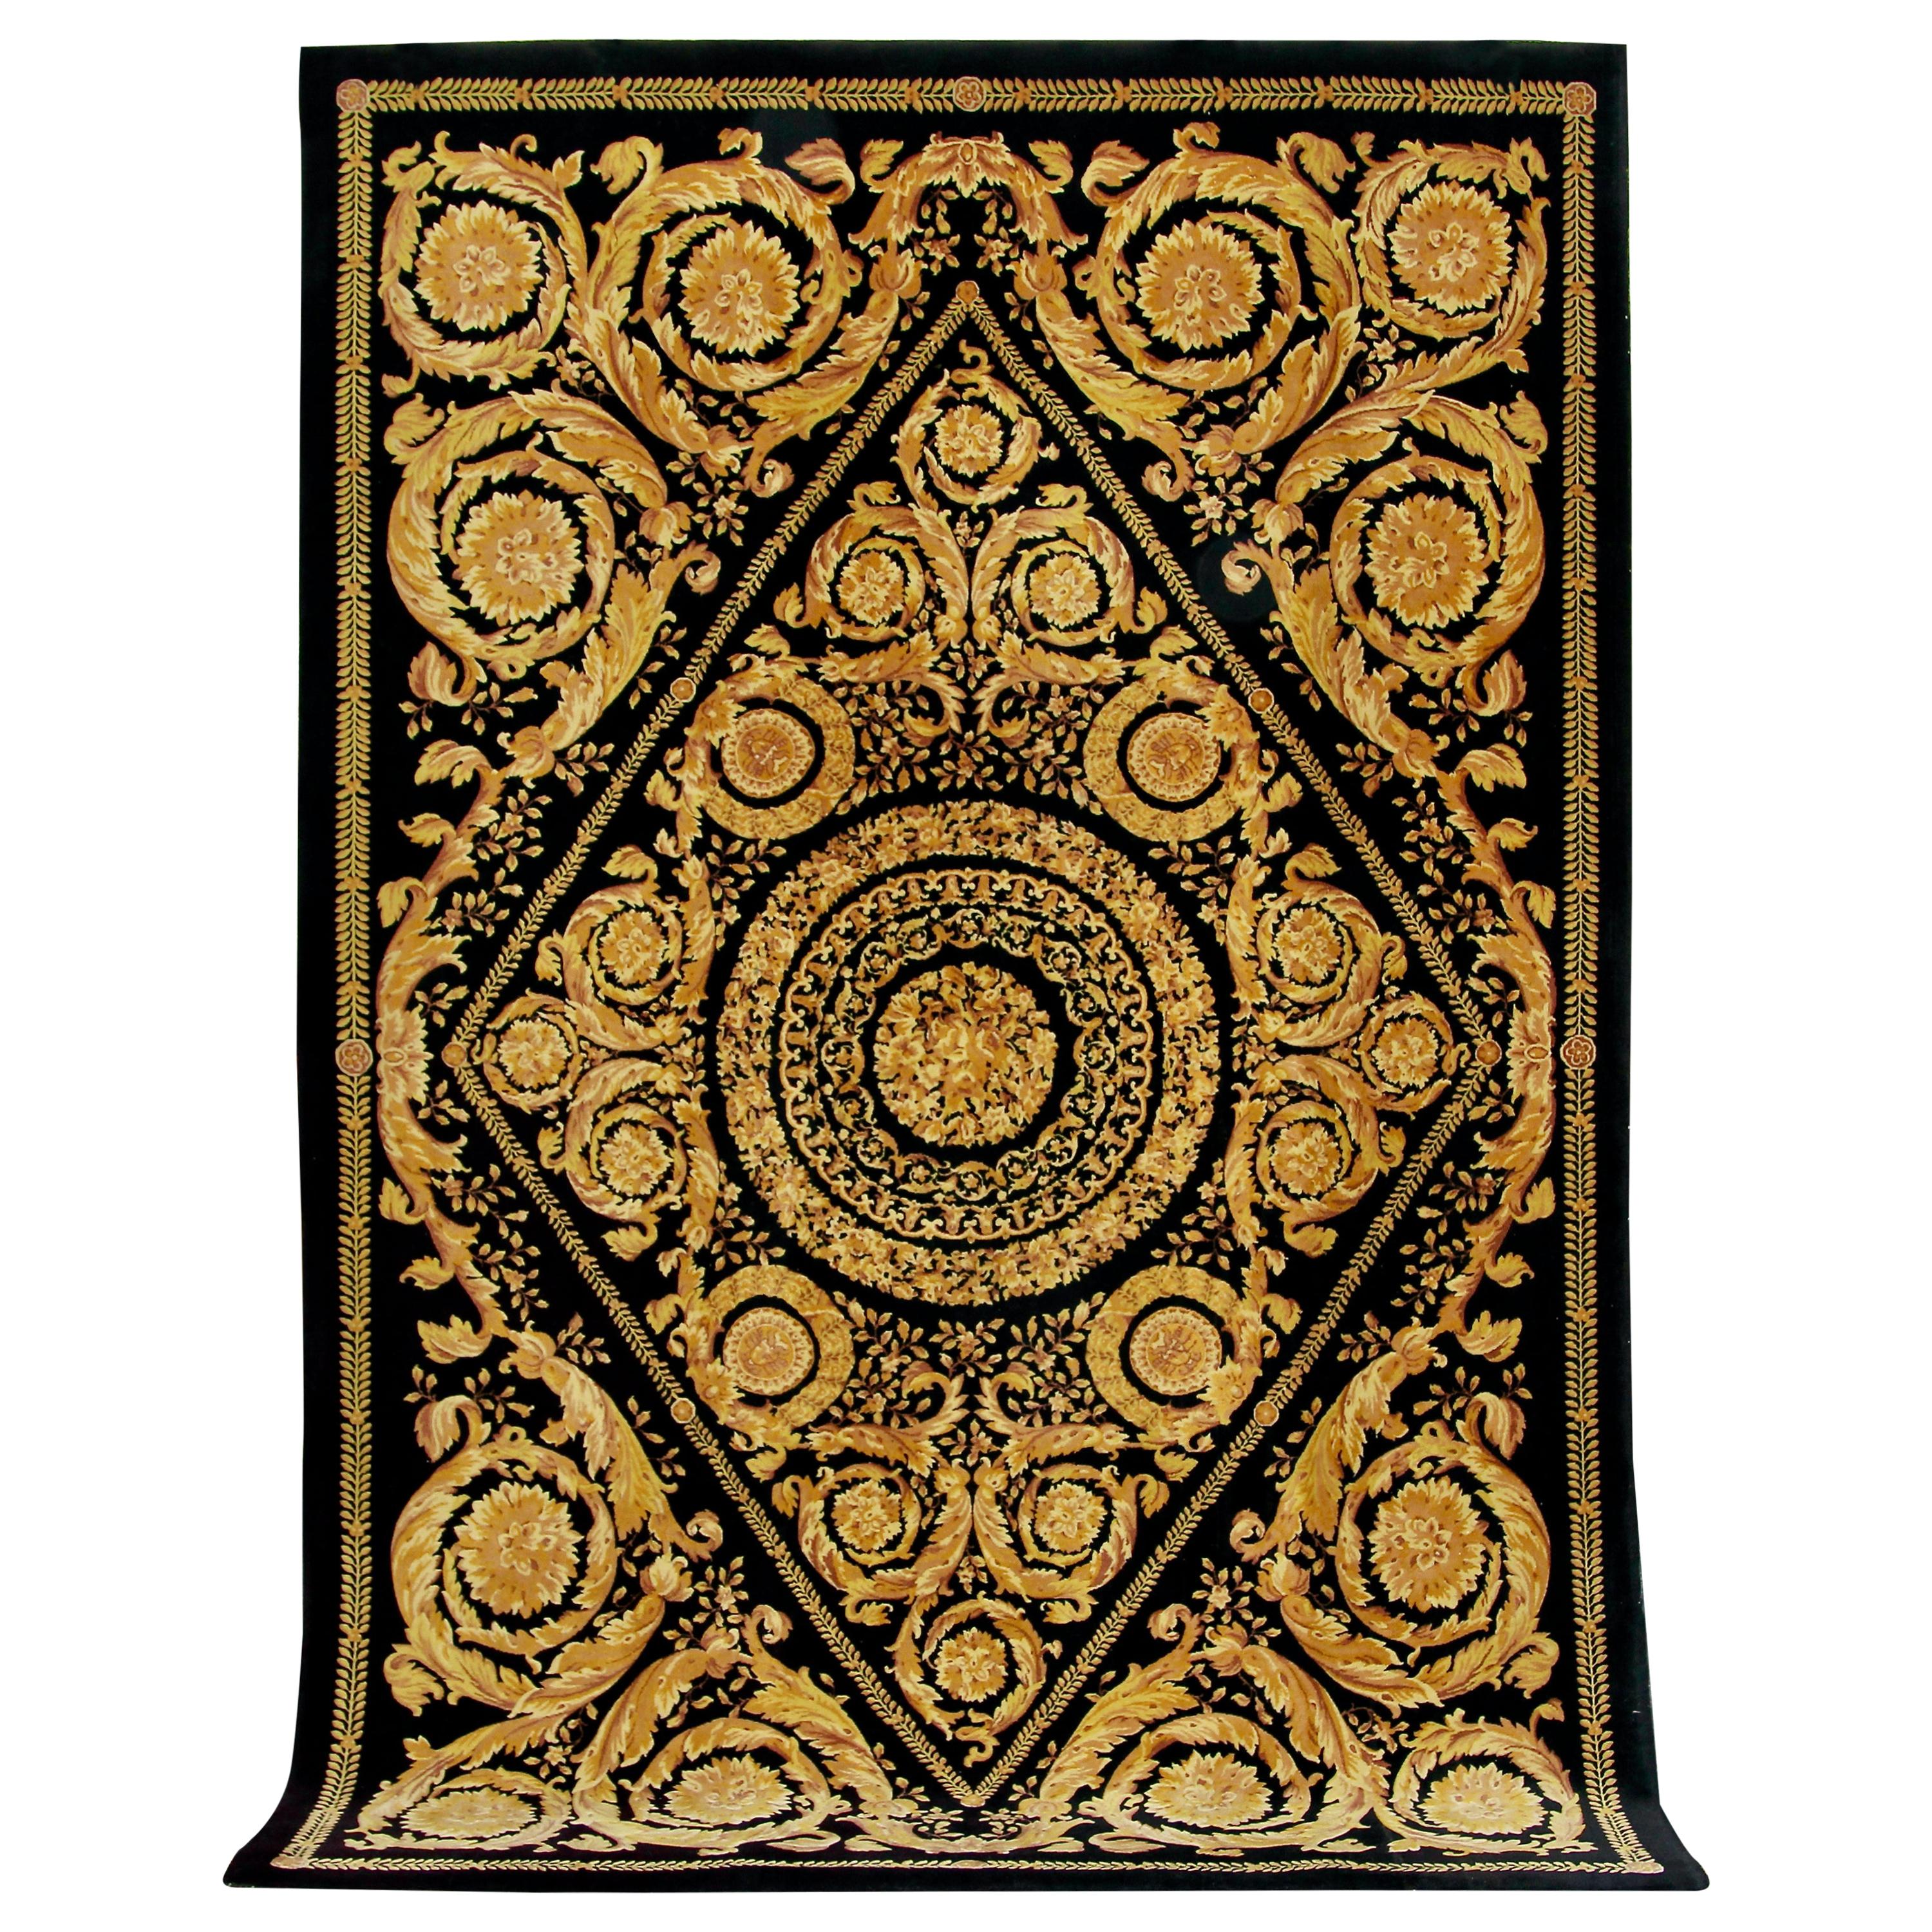 Sturen Bemiddelaar temperament Gianni Versace Collection Black and Gold Designer Carpet, Rug. Barocco For  Sale at 1stDibs | versace rug, versace carpets, versace design carpet